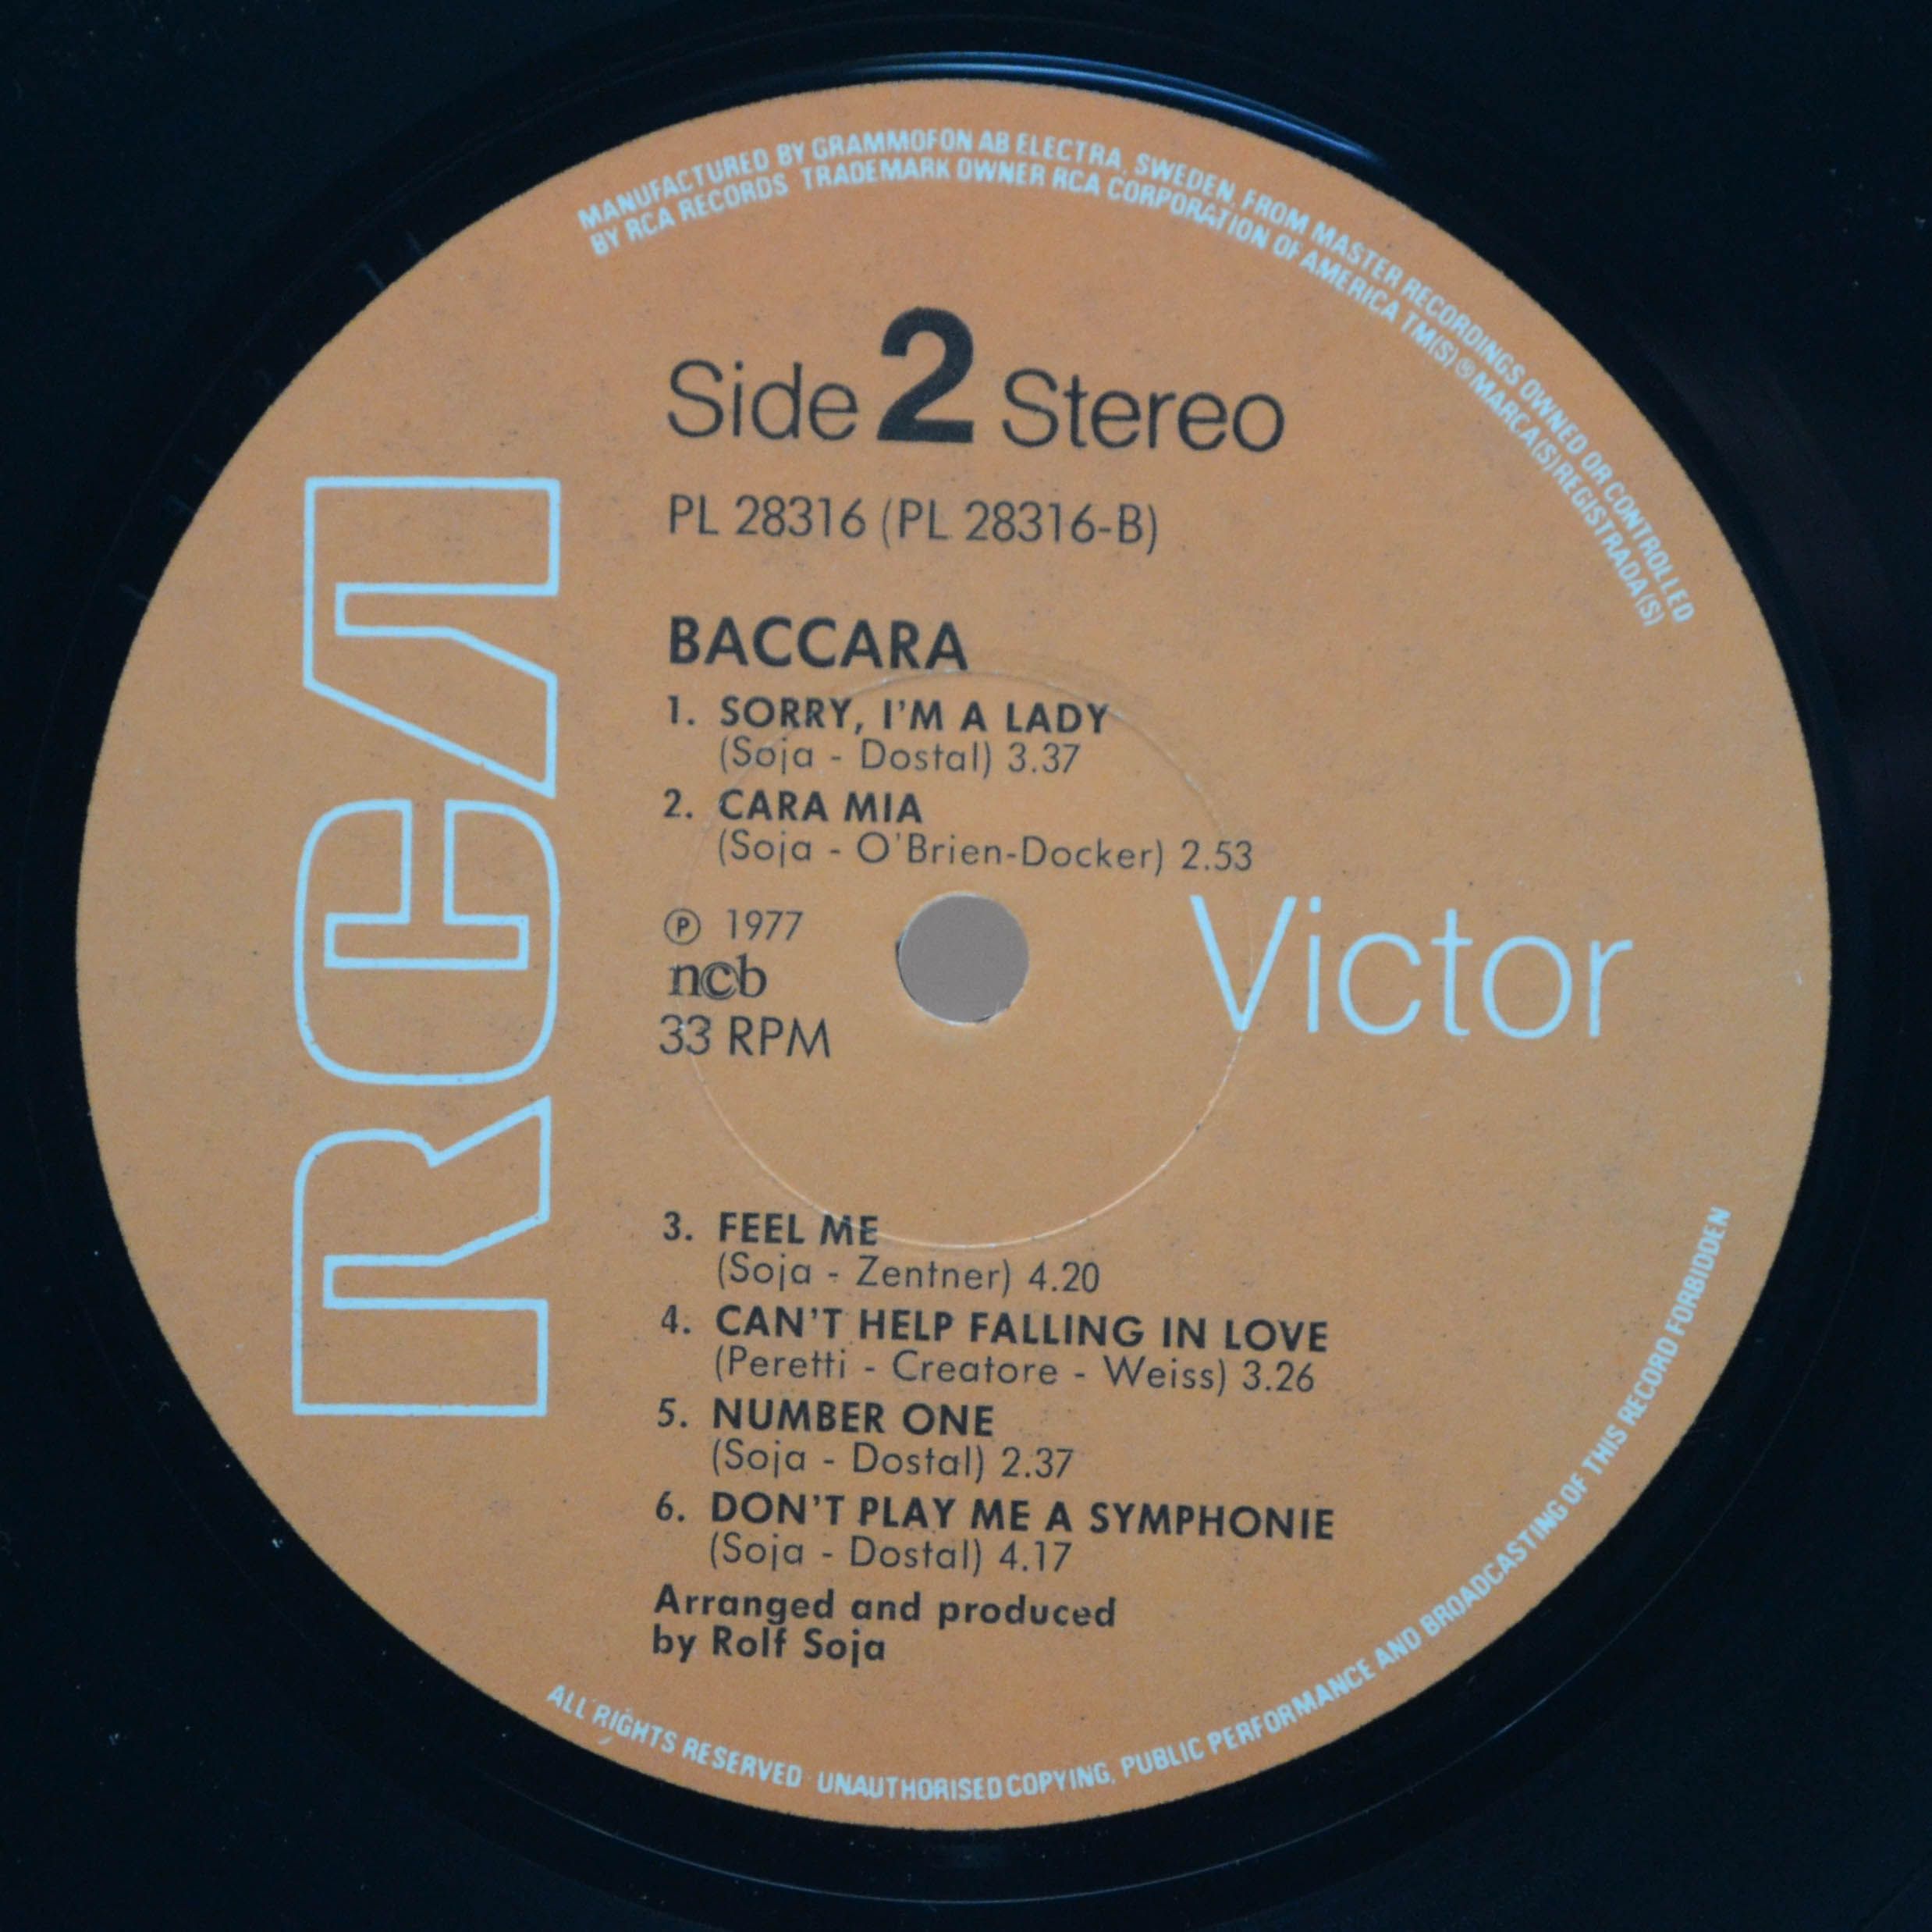 Baccara — Baccara, 1977